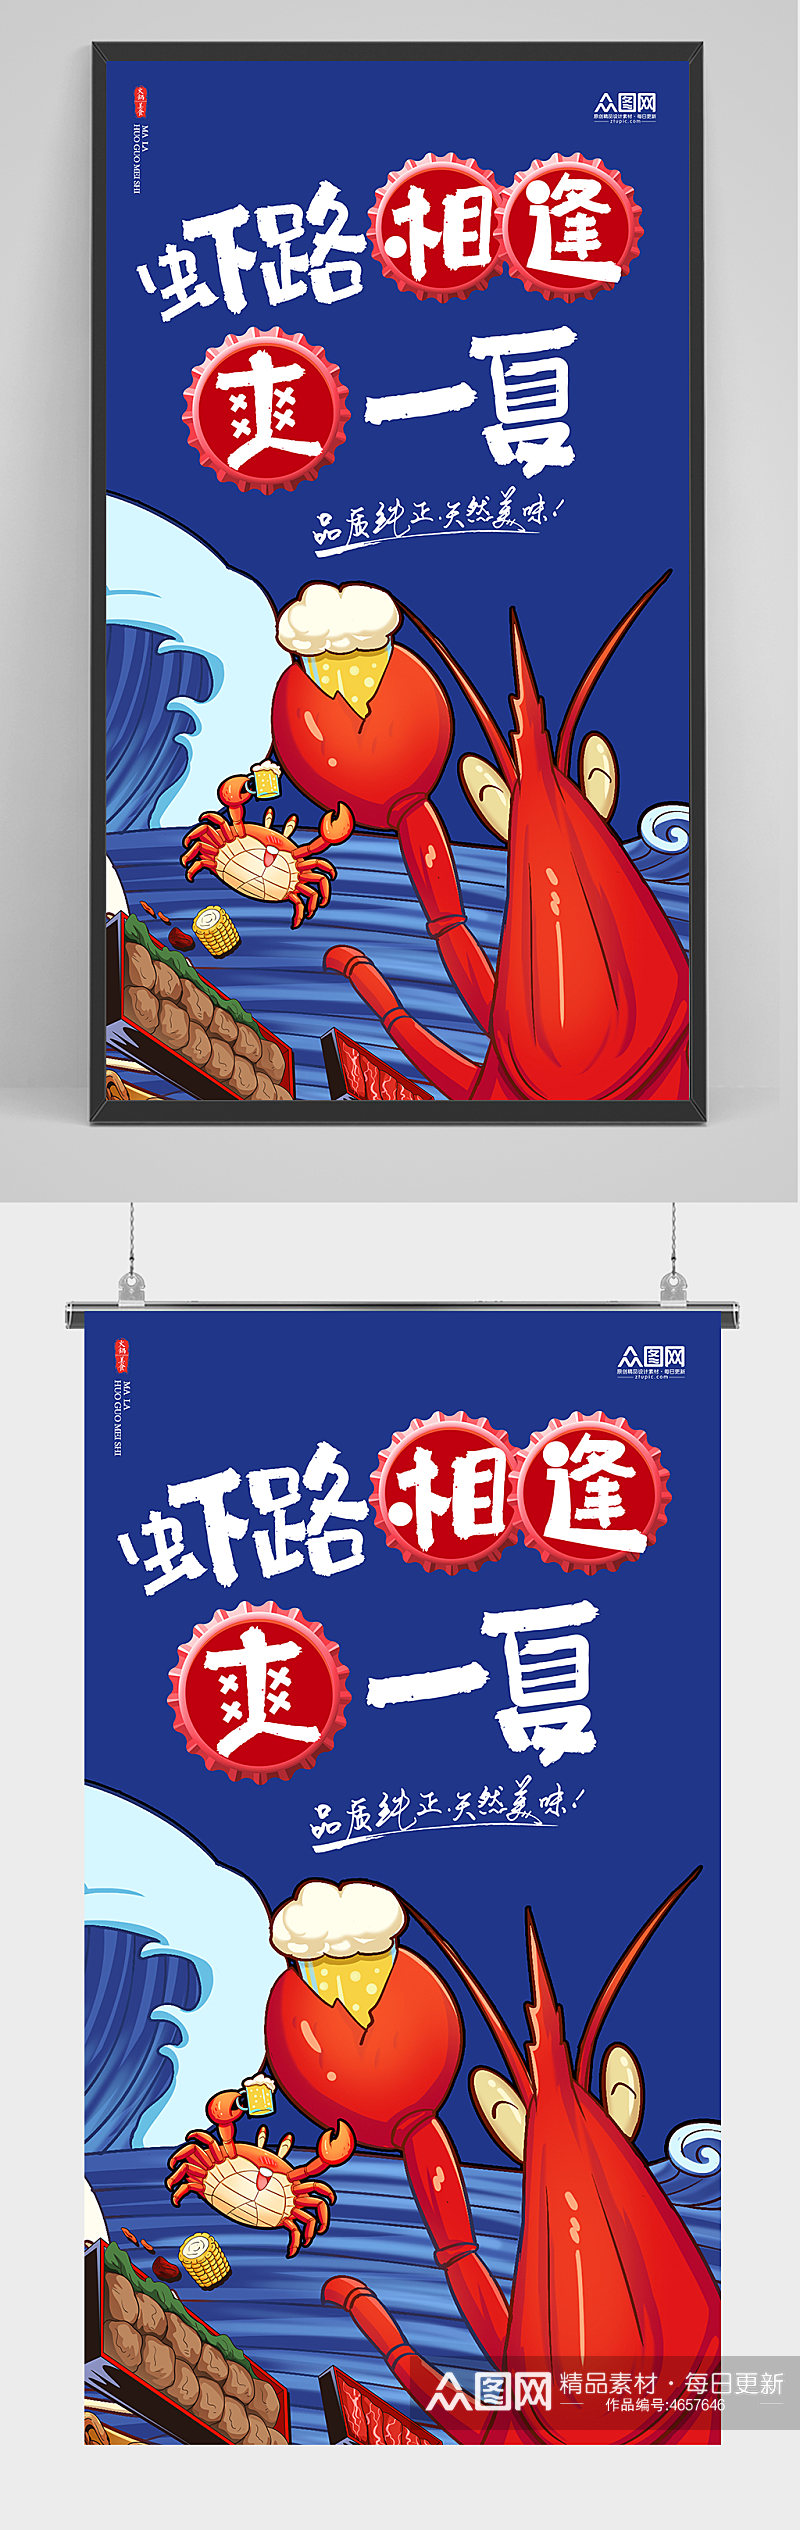 夏季美食小龙虾美食节宣传促销海报素材